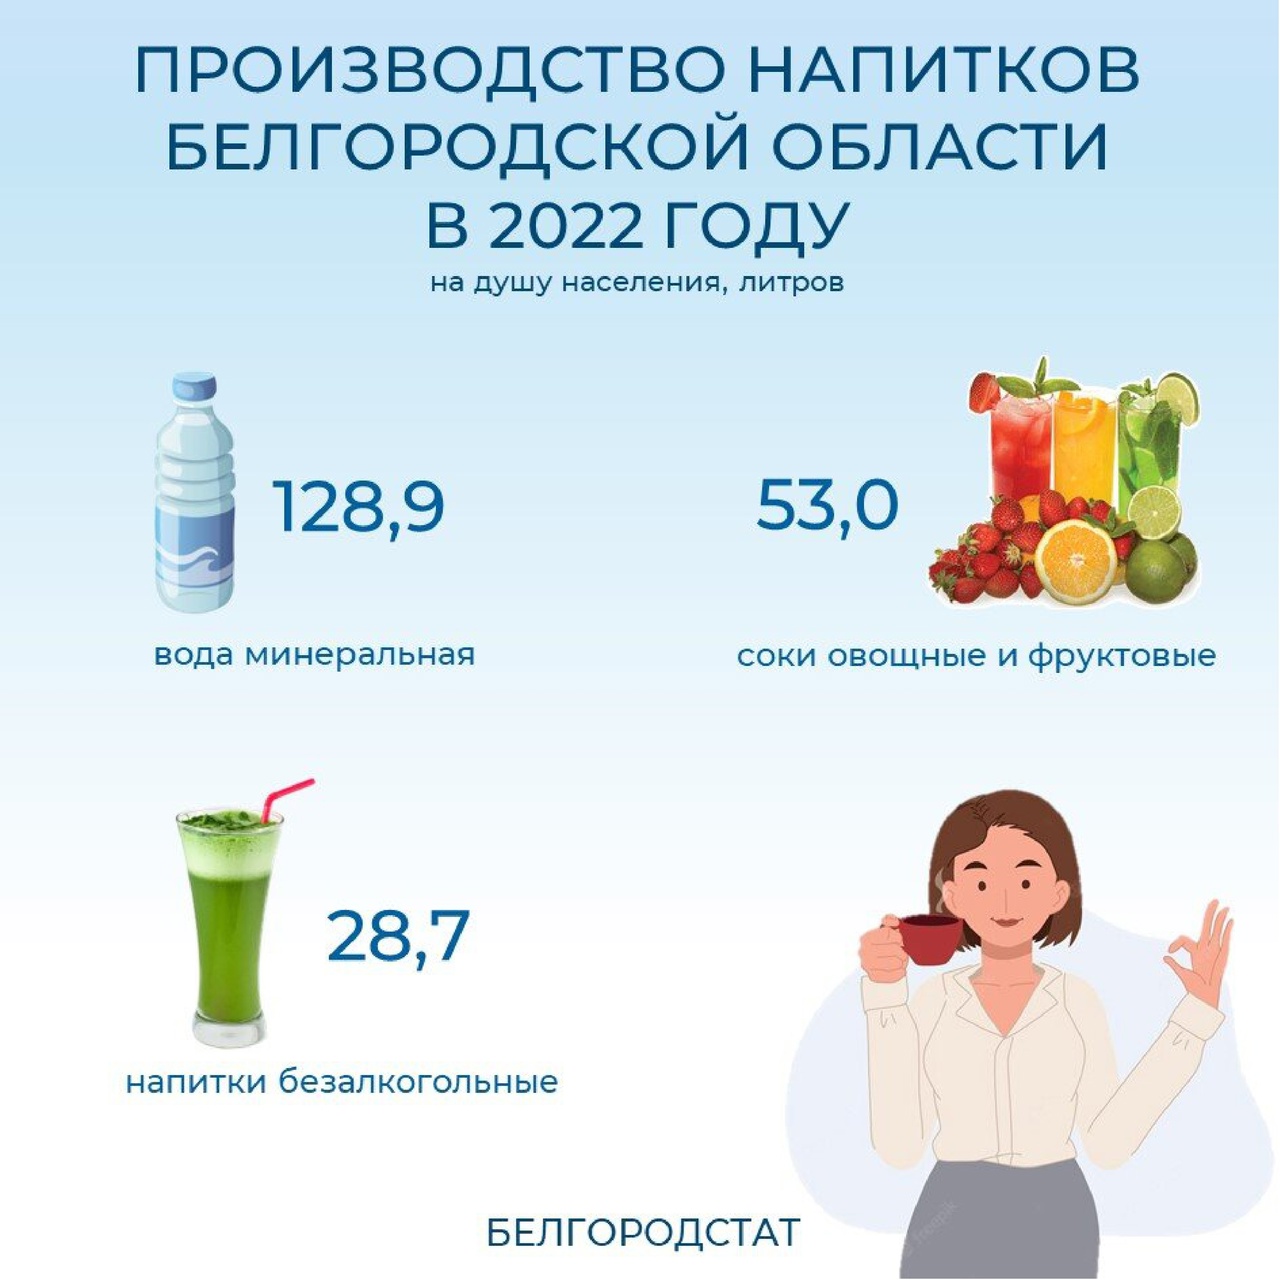 В Белгородской области выпускается большой ассортимент напитков..